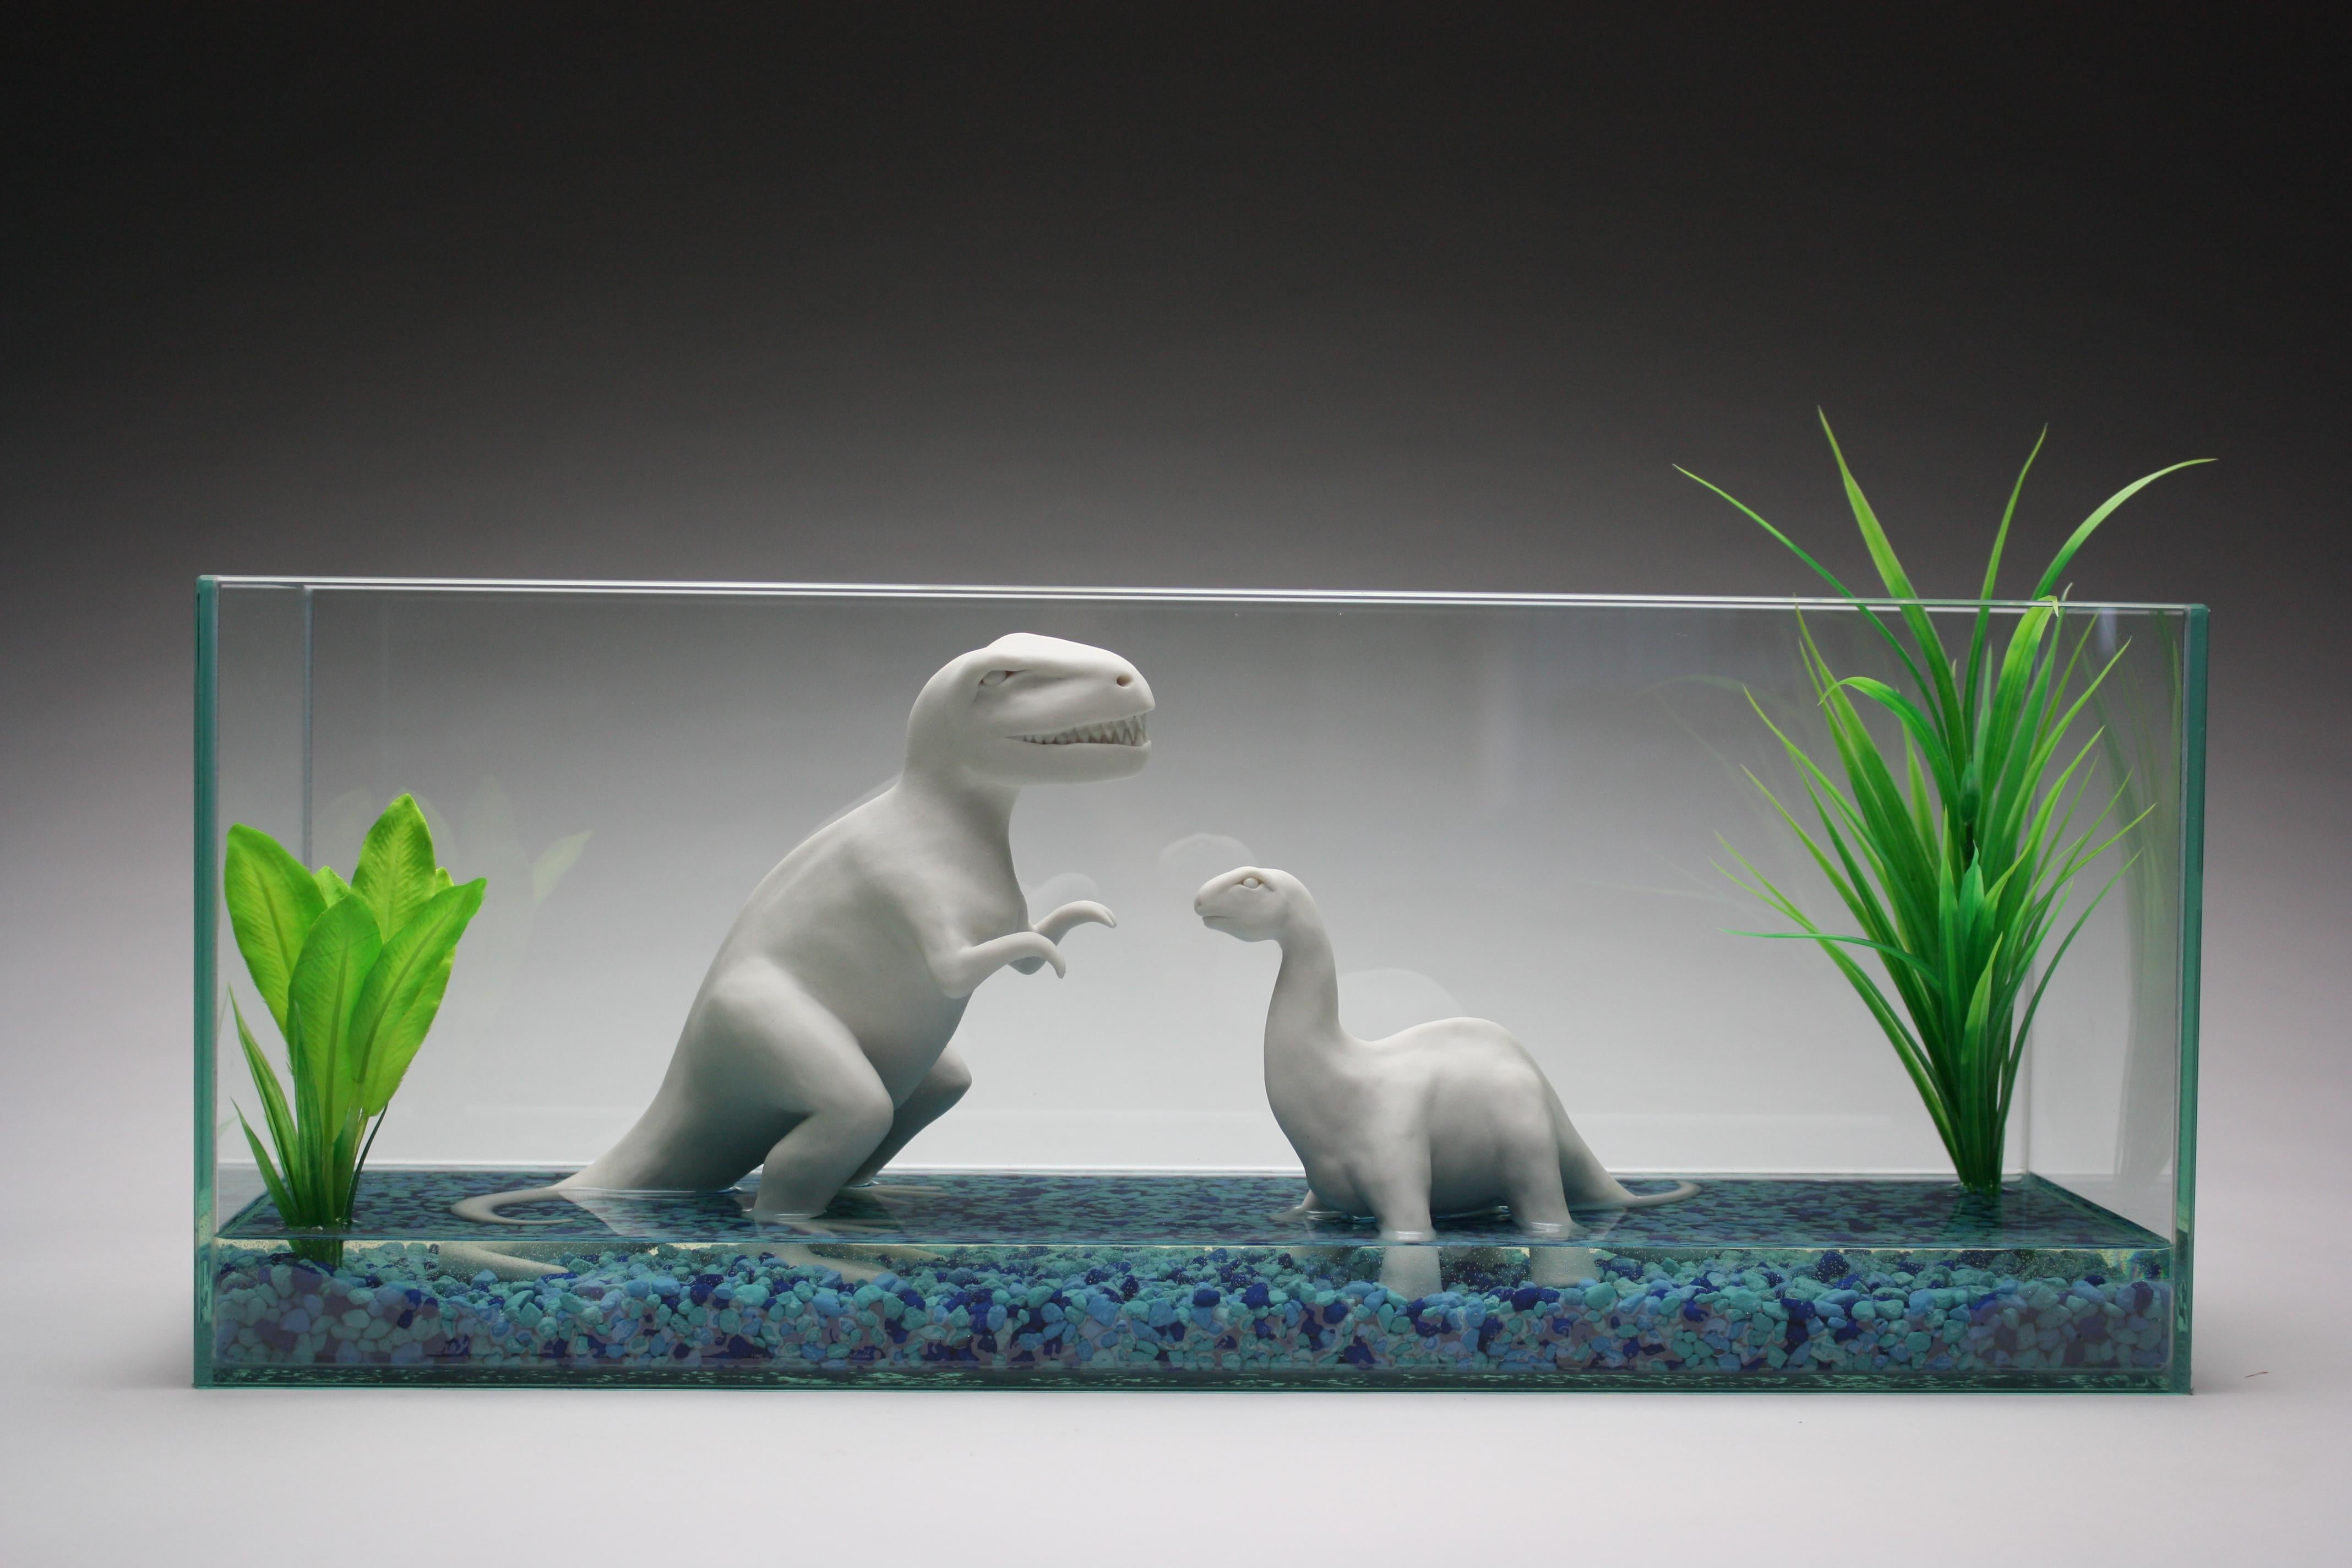 Un par de dinosaurios de porcelana blanca construidos a mano por la artista neoyorquina Bethany Krull están dentro de un acuario de cristal.  Los dinosaurios, las plantas artificiales de un verde vibrante y las piedras azules del acuario están